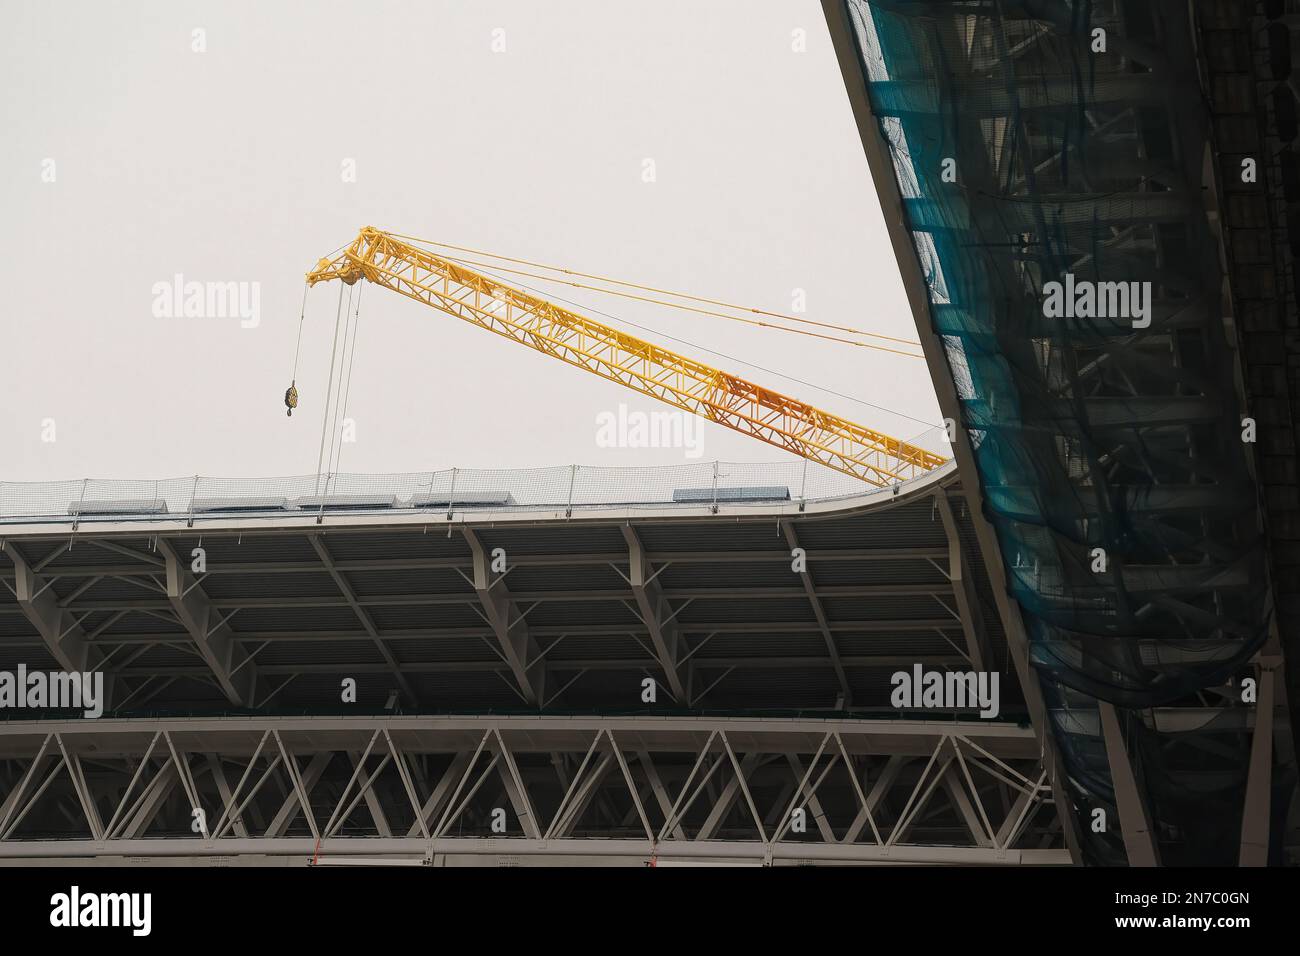 Construcción y mejora del mayor estadio de fútbol con grúa de España, detalle del techo de la obra. Santiago Bernabéu - Real Madrid Foto de stock